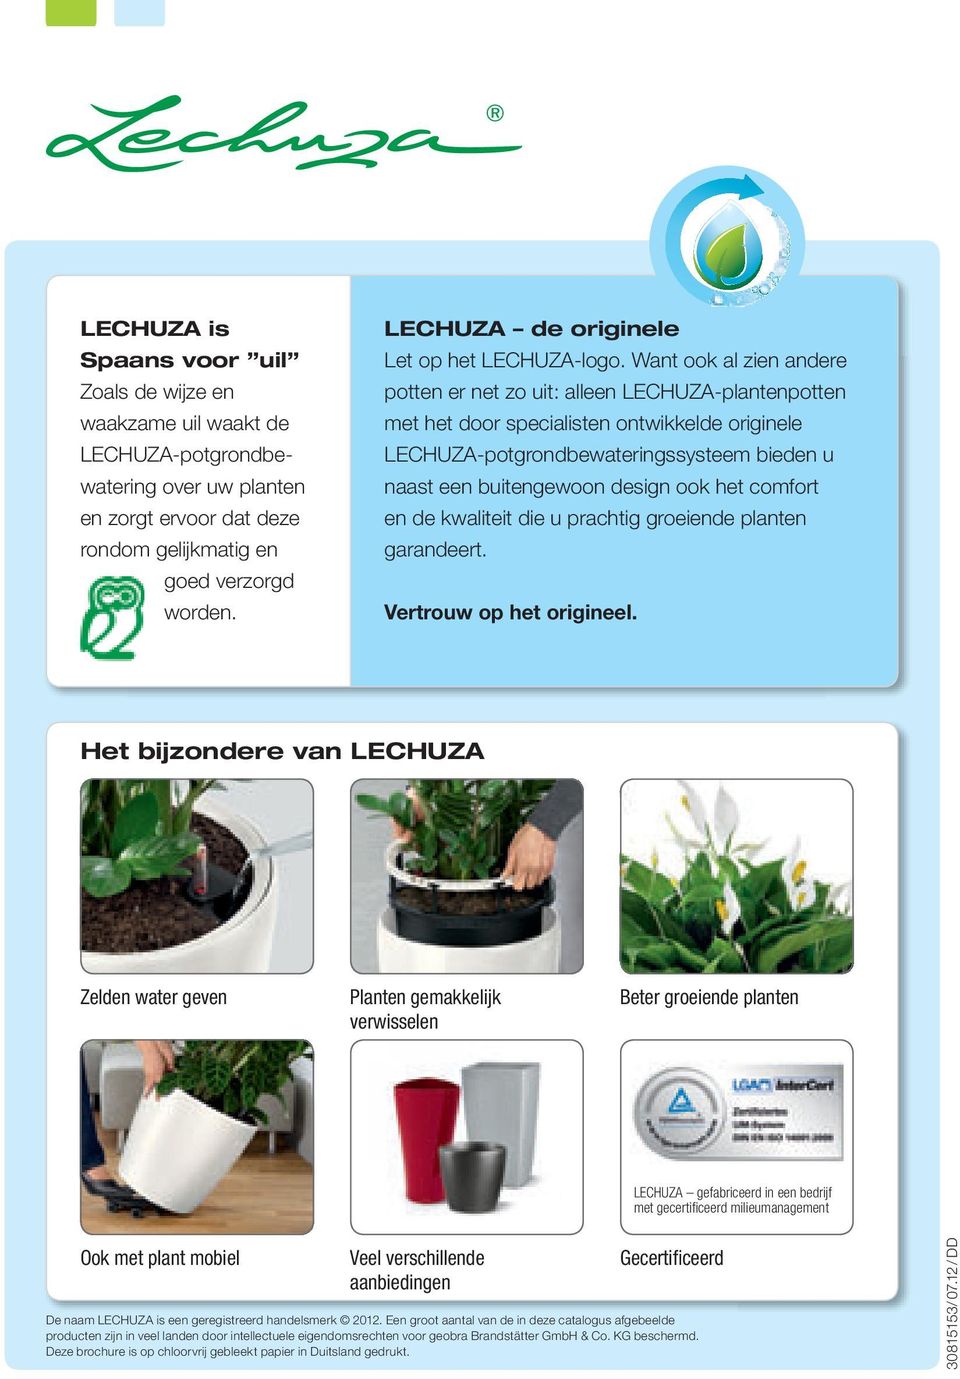 Want ook al zien andere potten er net zo uit: alleen LECHUZA-plantenpotten met het door specialisten ontwikkelde originele LECHUZA-potgrondbewateringssysteem bieden u naast een buitengewoon design